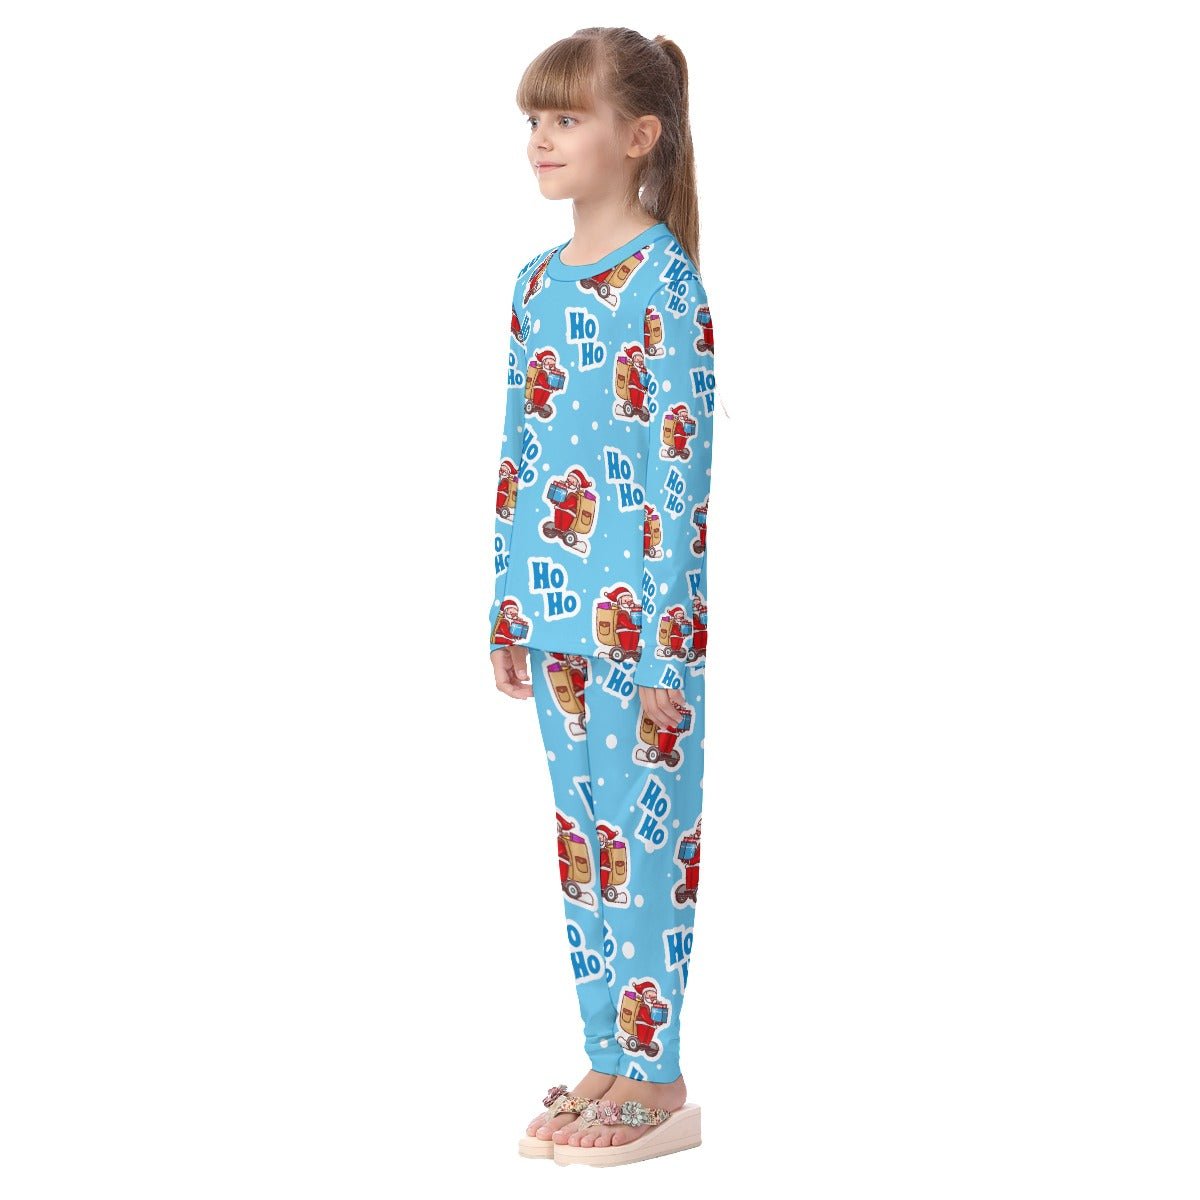 Kids Christmas Pyjama Set - Light Blue "Ho Ho" - Festive Style